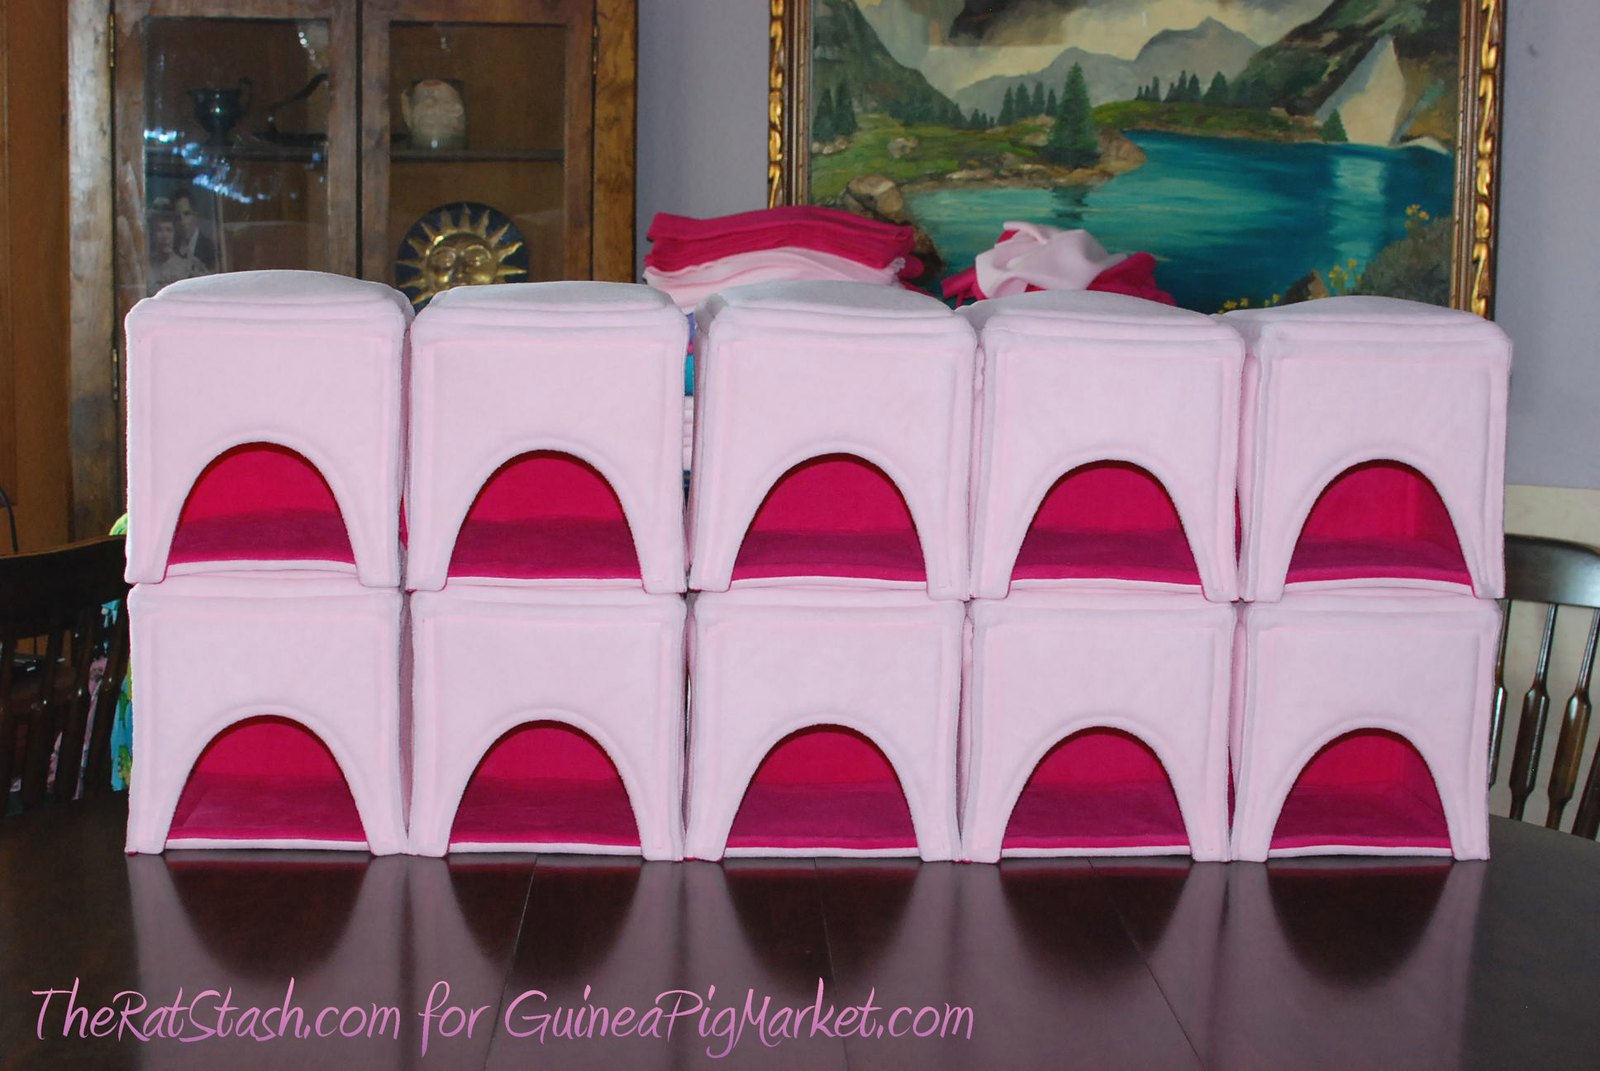 For GuineaPigMarket.com: Baby Pink Corner Cabins. Find them here: http://www.guineapigmarket.com/corner-cabin#.UhViZT9nA7g